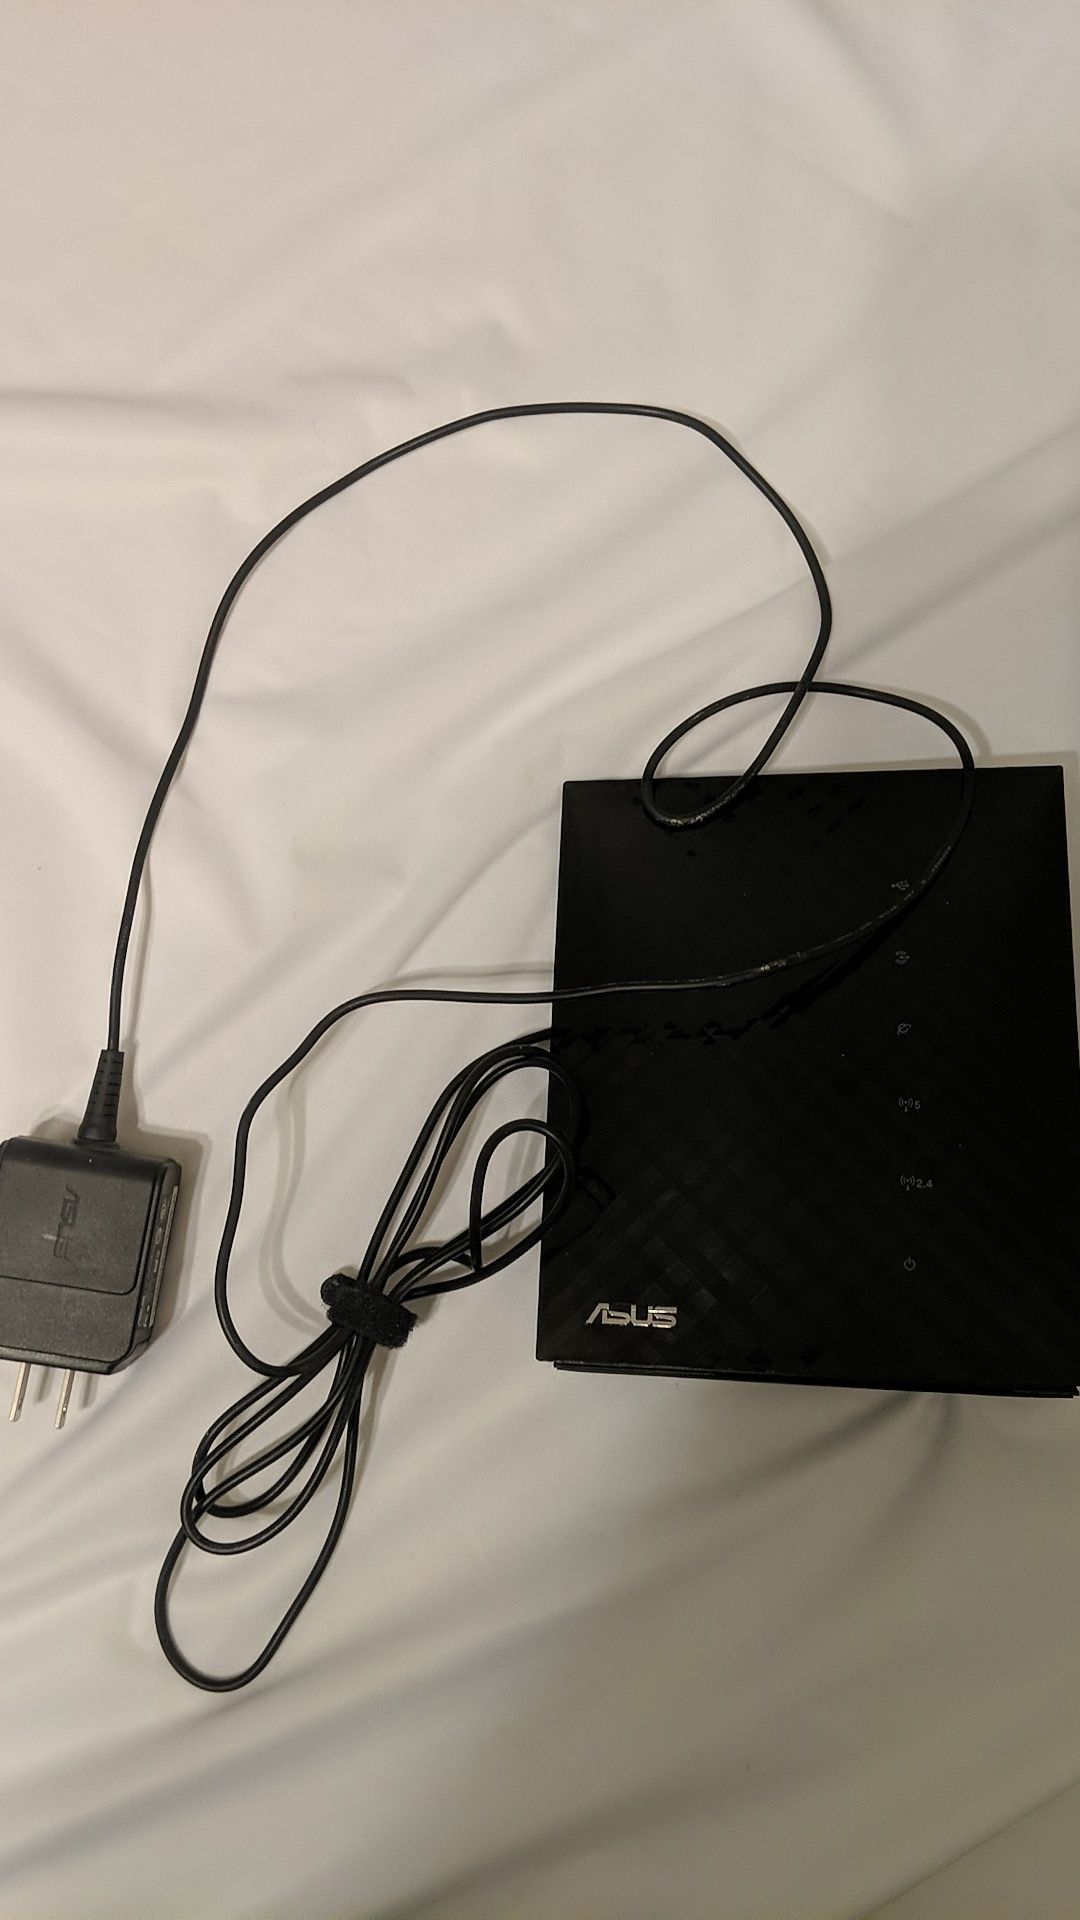 Asus RT-N56U Internet Router